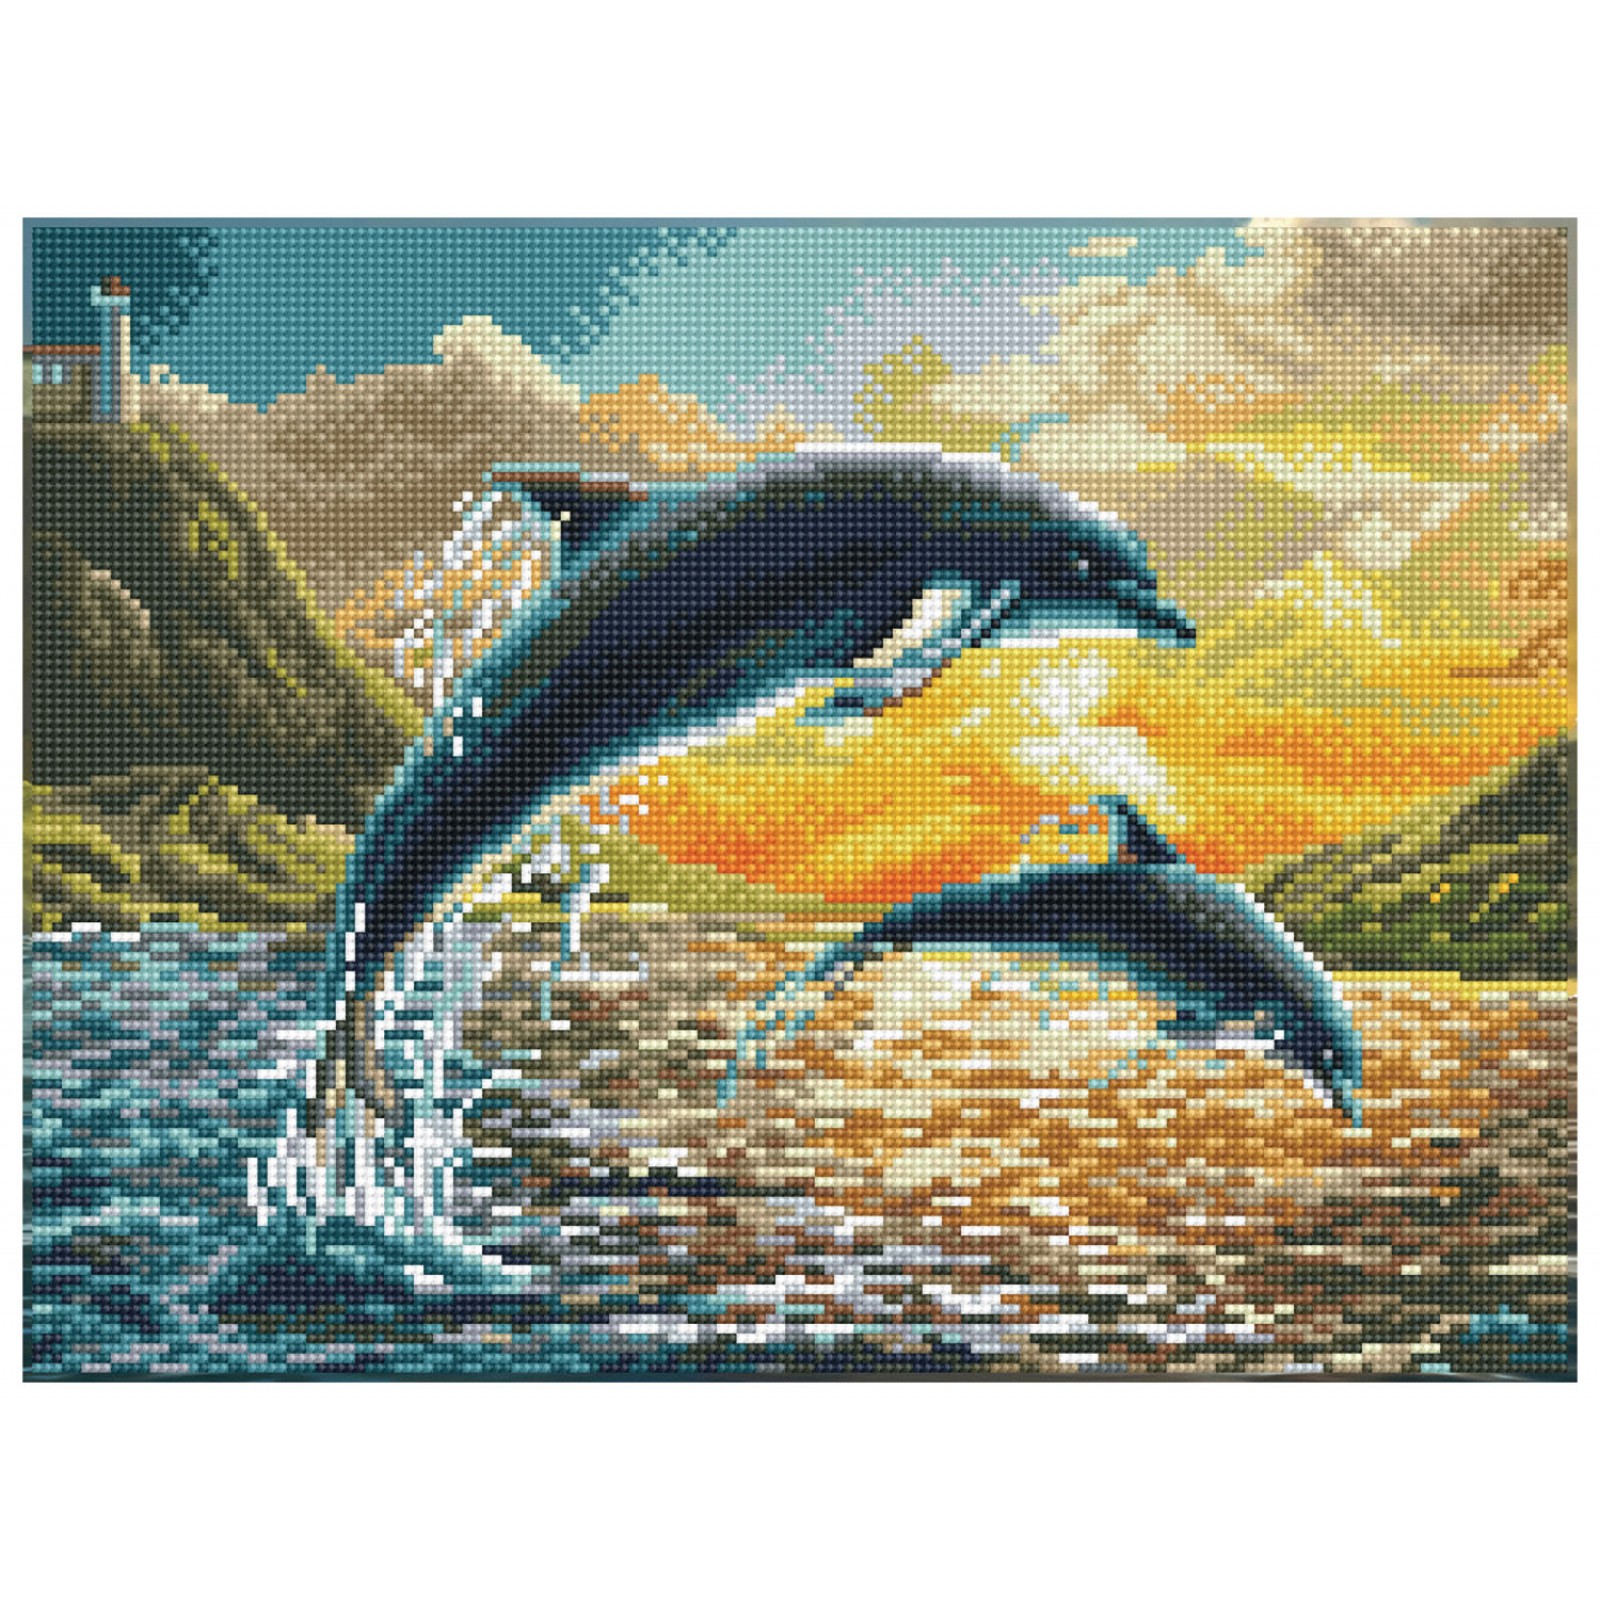 Dolphin Sunset - Pre-Framed Kit - Diamond Painting Kit with Frame -  DQK9.012 - Diamond Dotz®